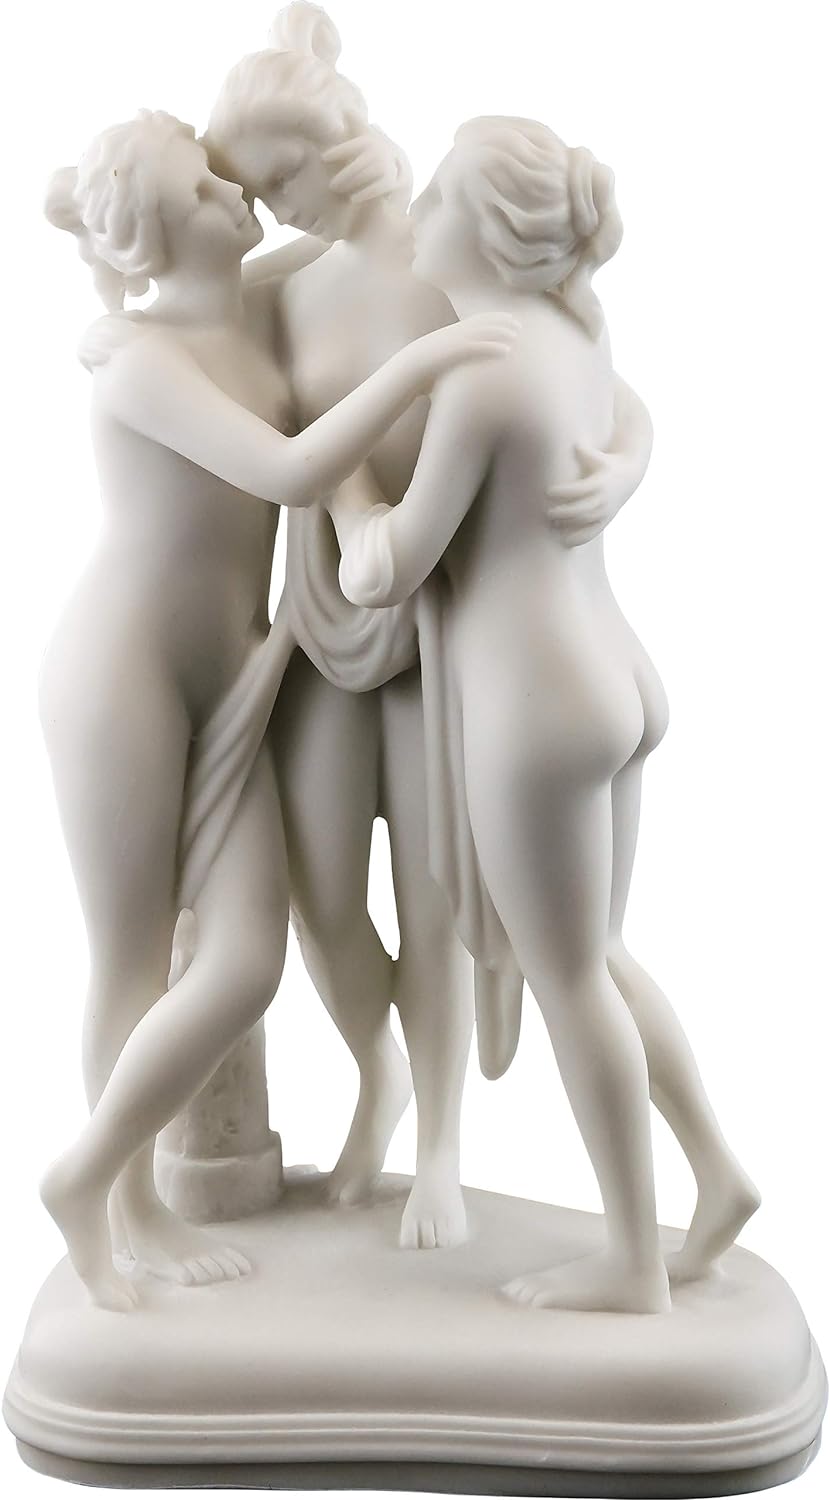 三美神像 ゼウスの娘たち ギリシャ彫刻 大理石風仕上げ彫像 美 魅力 創造性のローマの女神 高さ 約24cm置物彫刻 美しい古典主義 インテリア彫刻 アート工芸 プレゼント贈り物 輸入品 --------------------- Top Collection The Three Graces Statue- Daughters of Zeus Greek Sculpture in White Marble Finish-Roman Goddesses of Beauty, Charm, and Creativity- 9.5-Inch Figurine Top Collection製 製品サイズ；高さ 約21.5cm×幅 約13.5cm×奥行 約9.5cm 重さ；1050g 型番号；2258 B003T2B9VU 素材；コールドキャストレジン 大理石風 ハンドペイント仕上げ 石粉や炭酸カルシウムを混合した樹脂（ポリストーン等）を、型に流し込み、成型させたもので、プラスチックと石の中間のような性質を持っていて、重量感がありますが、細かい装飾性が優れており、質感の再現性も良く高級感を持った仕上げが可能です。落したりすると割れたり欠けたりします。 米国でプロデュースされた、美術品の彫像です。 この彫像は、米国、NYの店舗ショップからの発送し、弊社東京店にて検品後、国内発送しますので、約18～26日後のお届けとなります。 ----------------------- (商品説明) 【三美神（さんびしん、The Three Graces）】 ギリシア神話とローマ神話に登場する美と優雅を象徴する三人の女神。ラファエロ・サンティの作品やサンドロ・ボッティチェッリの「春」にも描かれている。 ギリシア神話に登場する三美神で、それぞれ魅力(charm)、美貌(beauty)、創造力(creativity)を司っている。一般的には、ヘーシオドスの挙げるカリスのアグライアー、エウプロシュネー、タレイアとされている。一部にはパーシテアー、カレー、エウプロシュネーの3柱を三美神とする説もある。また、パリスの審判に登場する美しさを競うヘーラー、アテーナー、アプロディーテーも指すことがあり、分別に権勢、知恵、美貌を象徴する。 ローマ神話に登場する三美神は、それぞれ愛(amor)、慎み(castitas)、美(pulchritude)を司っている。ギリシア神話の美しさを競う三美神と対応させて、主にユーノー、ミネルウァ、ウェヌスが有名。 【プレミアムな彫刻が施された白い大理石】 本物の大理石の粉末を樹脂と混合しました。 細部を損なうことなく、高品質のアンティークな外観を与えるために白い大理石仕上げで手描きされています。 アンティークのレプリカやギリシャ神話が好きな友人や家族に最適です。 類似商品はこちら三人の女神彫刻 裸婦古代彫刻 レリーフ 彫像 29,150円薄い生地で覆われた、女神のトルソー壁彫刻 ギリ218,900円三美神/魅力 美貌 創造力/ 愛 慎み 美/ 151,800円古代ギリシャの女神 ヴィーナス神話像 置物 ブ29,040円サモトラケのニケ像 彫像 古代ローマ ギリシャ21,450円高さ150cm ミロのヴィーナス ルーブル美術506,000円ギリシャローマ彫刻 大理石風ヘラクレスとディオ43,780円デザイン・トスカノ製 アフロディーテ 古代ギリ39,600円アフロディーテ 海から昇るギリシャ ローマの女40,700円新着商品はこちら2024/5/17トレイルキャストストーン風メモリアルガーデンベ195,800円2024/5/17疾走する馬の子ポニーの鋳造ブロンズ製ガーデン彫1,188,000円2024/5/16極北のフクロウ 梟守護神アールデコ調キュビズム163,900円再販商品はこちら2024/5/11木の切り株で蝶と遊ぶ妖精彫像手描きの美しい魔法36,300円2024/5/1デコ79製 ゴールド風 トロピカル置物 ヒョウ41,800円2024/4/22セール！即納！テッド・ブレイロック インディア16,500円2024/05/17 更新 三美神像 ゼウスの娘たち ギリシャ彫刻 大理石風仕上げ彫像 美　魅力 創造性のローマの女神 高さ 約24cm置物彫刻